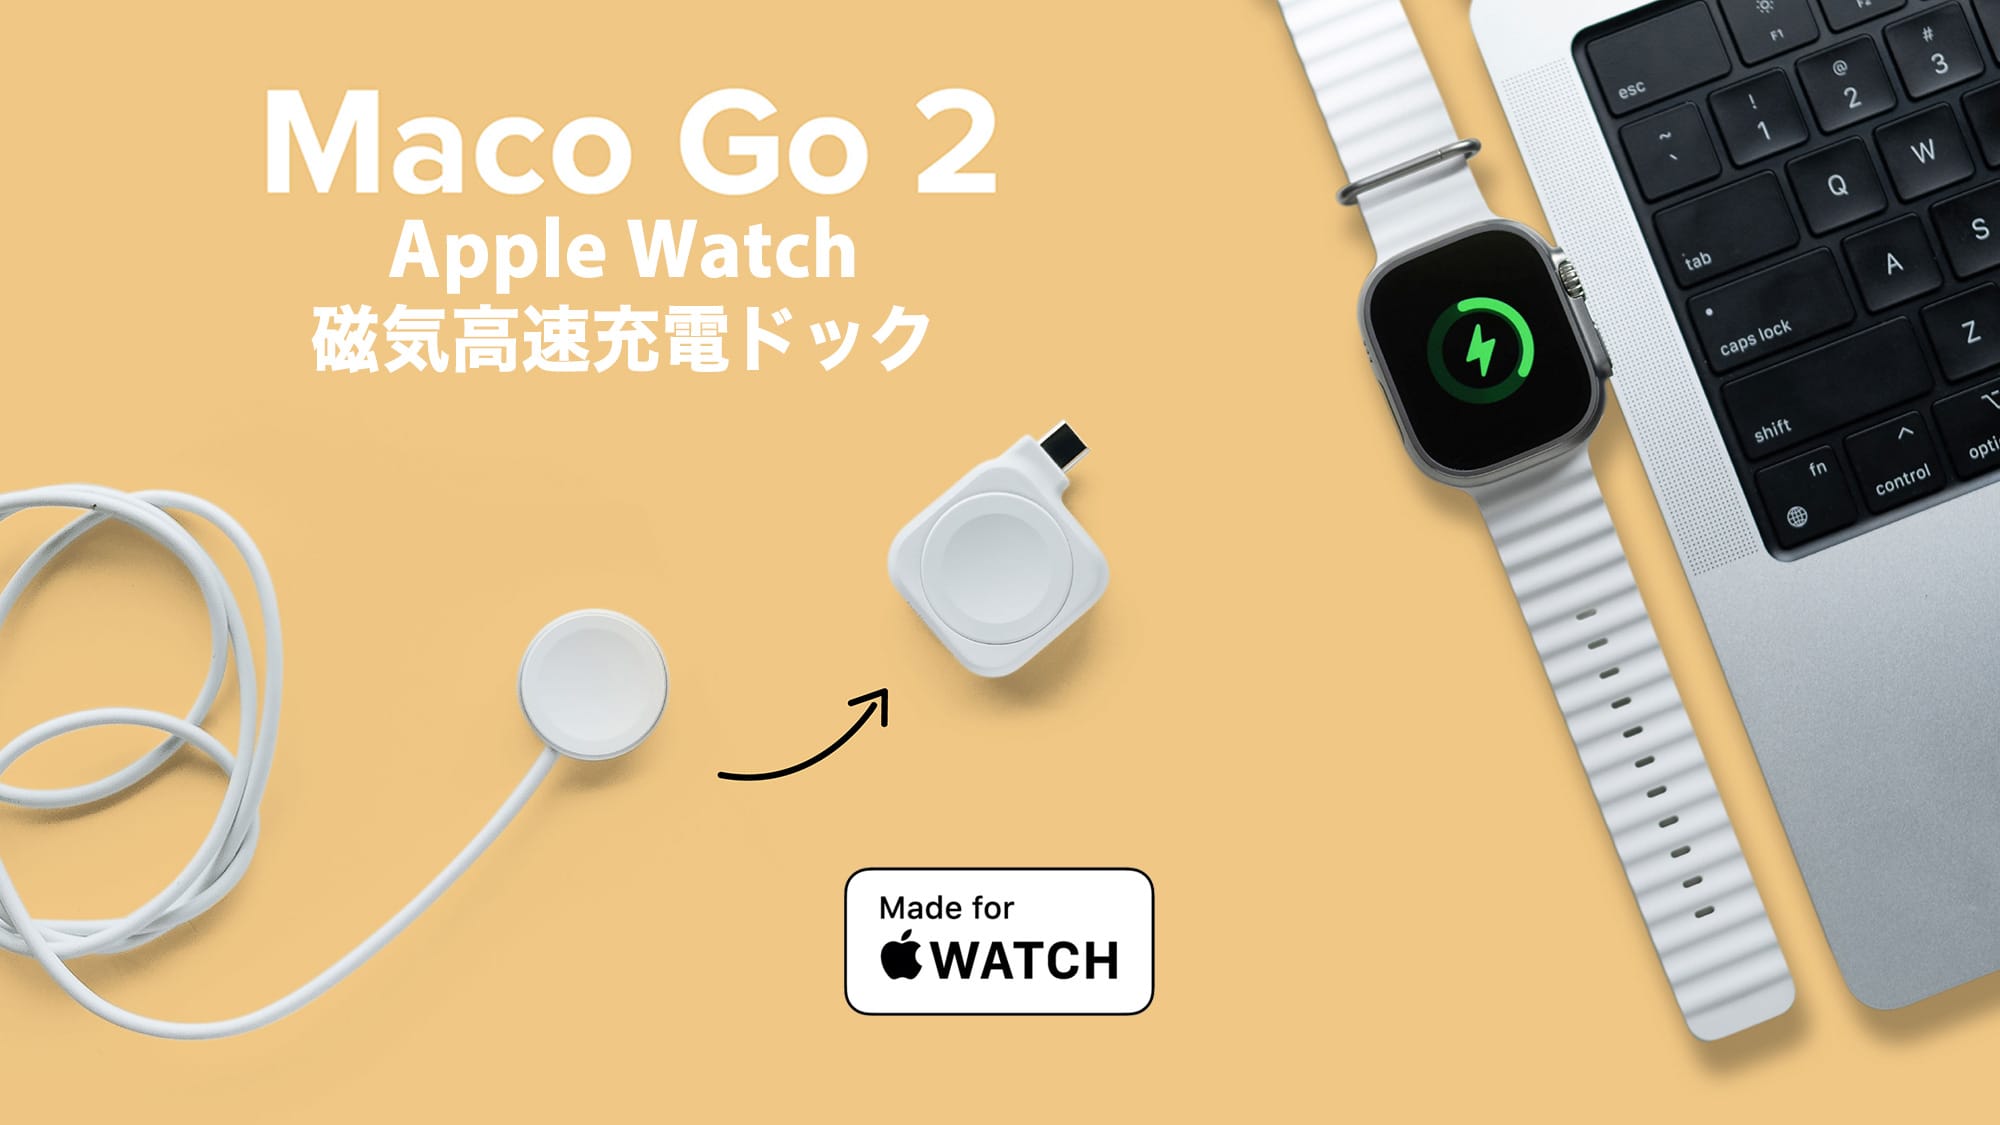 Apple Watch用磁気高速充電ドック「Maco Go 2」、CAMPFIREで予約受付中